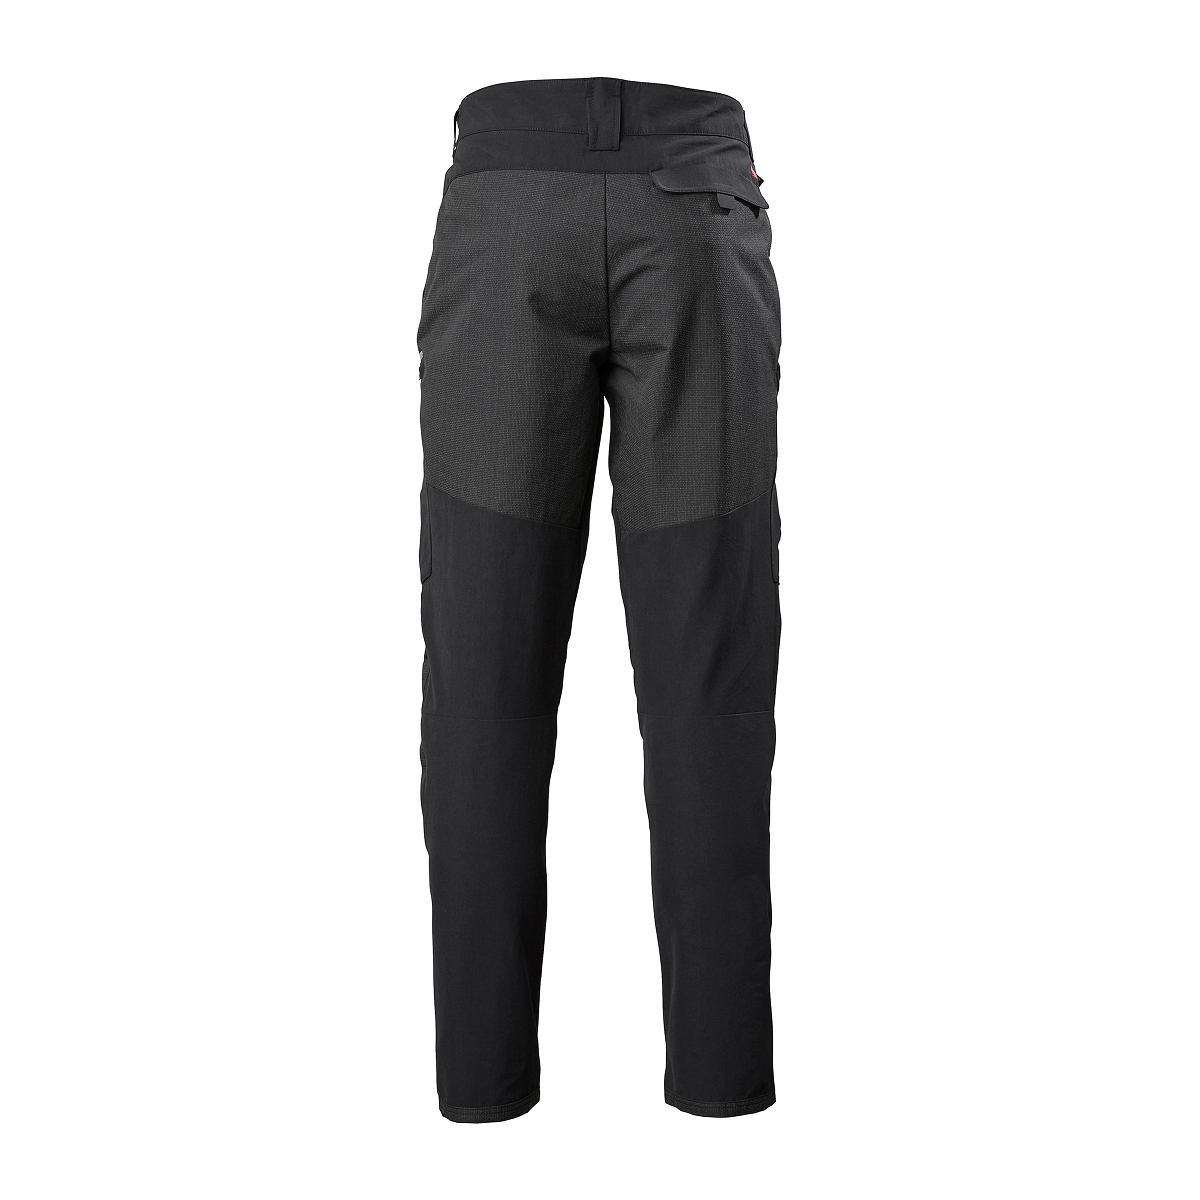 Musto Evolution Performance pantalon de voile 2.0 homme noir, taille 38 Long